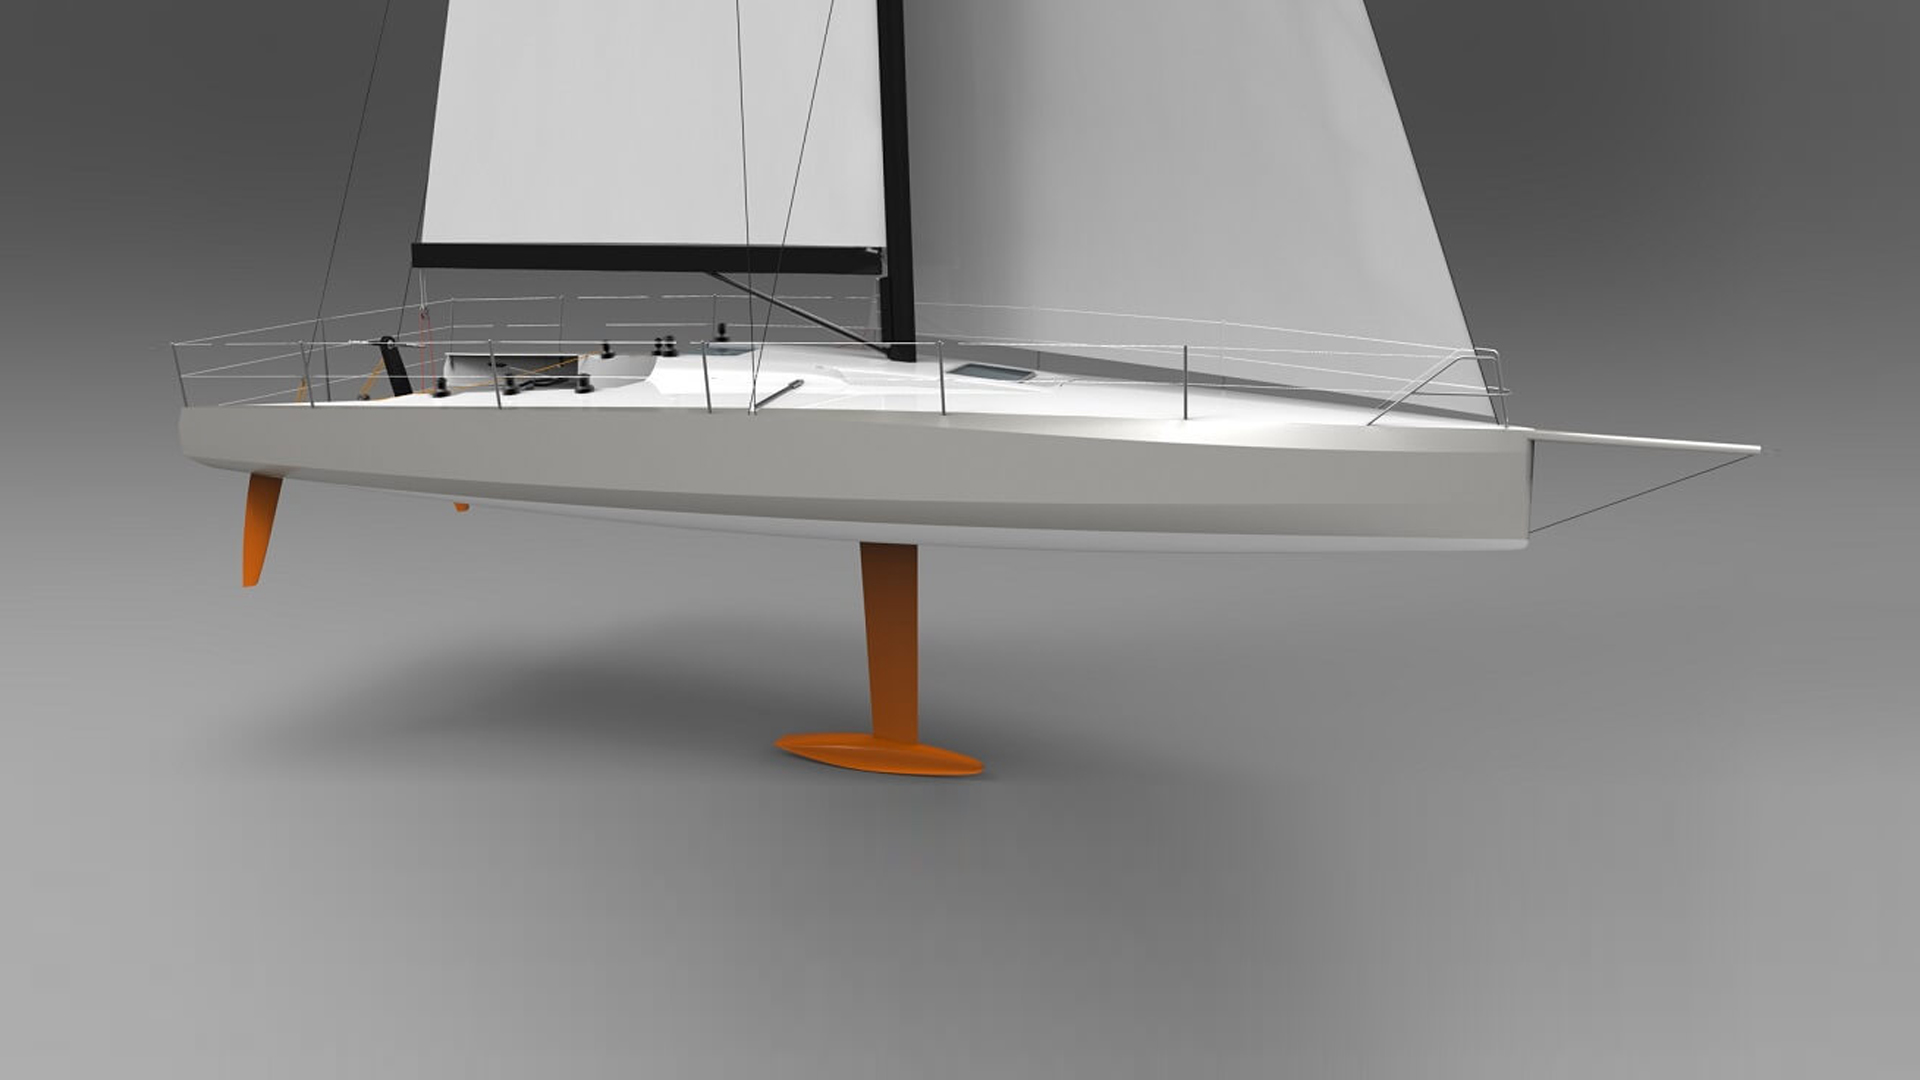 40 ft racing sailboat